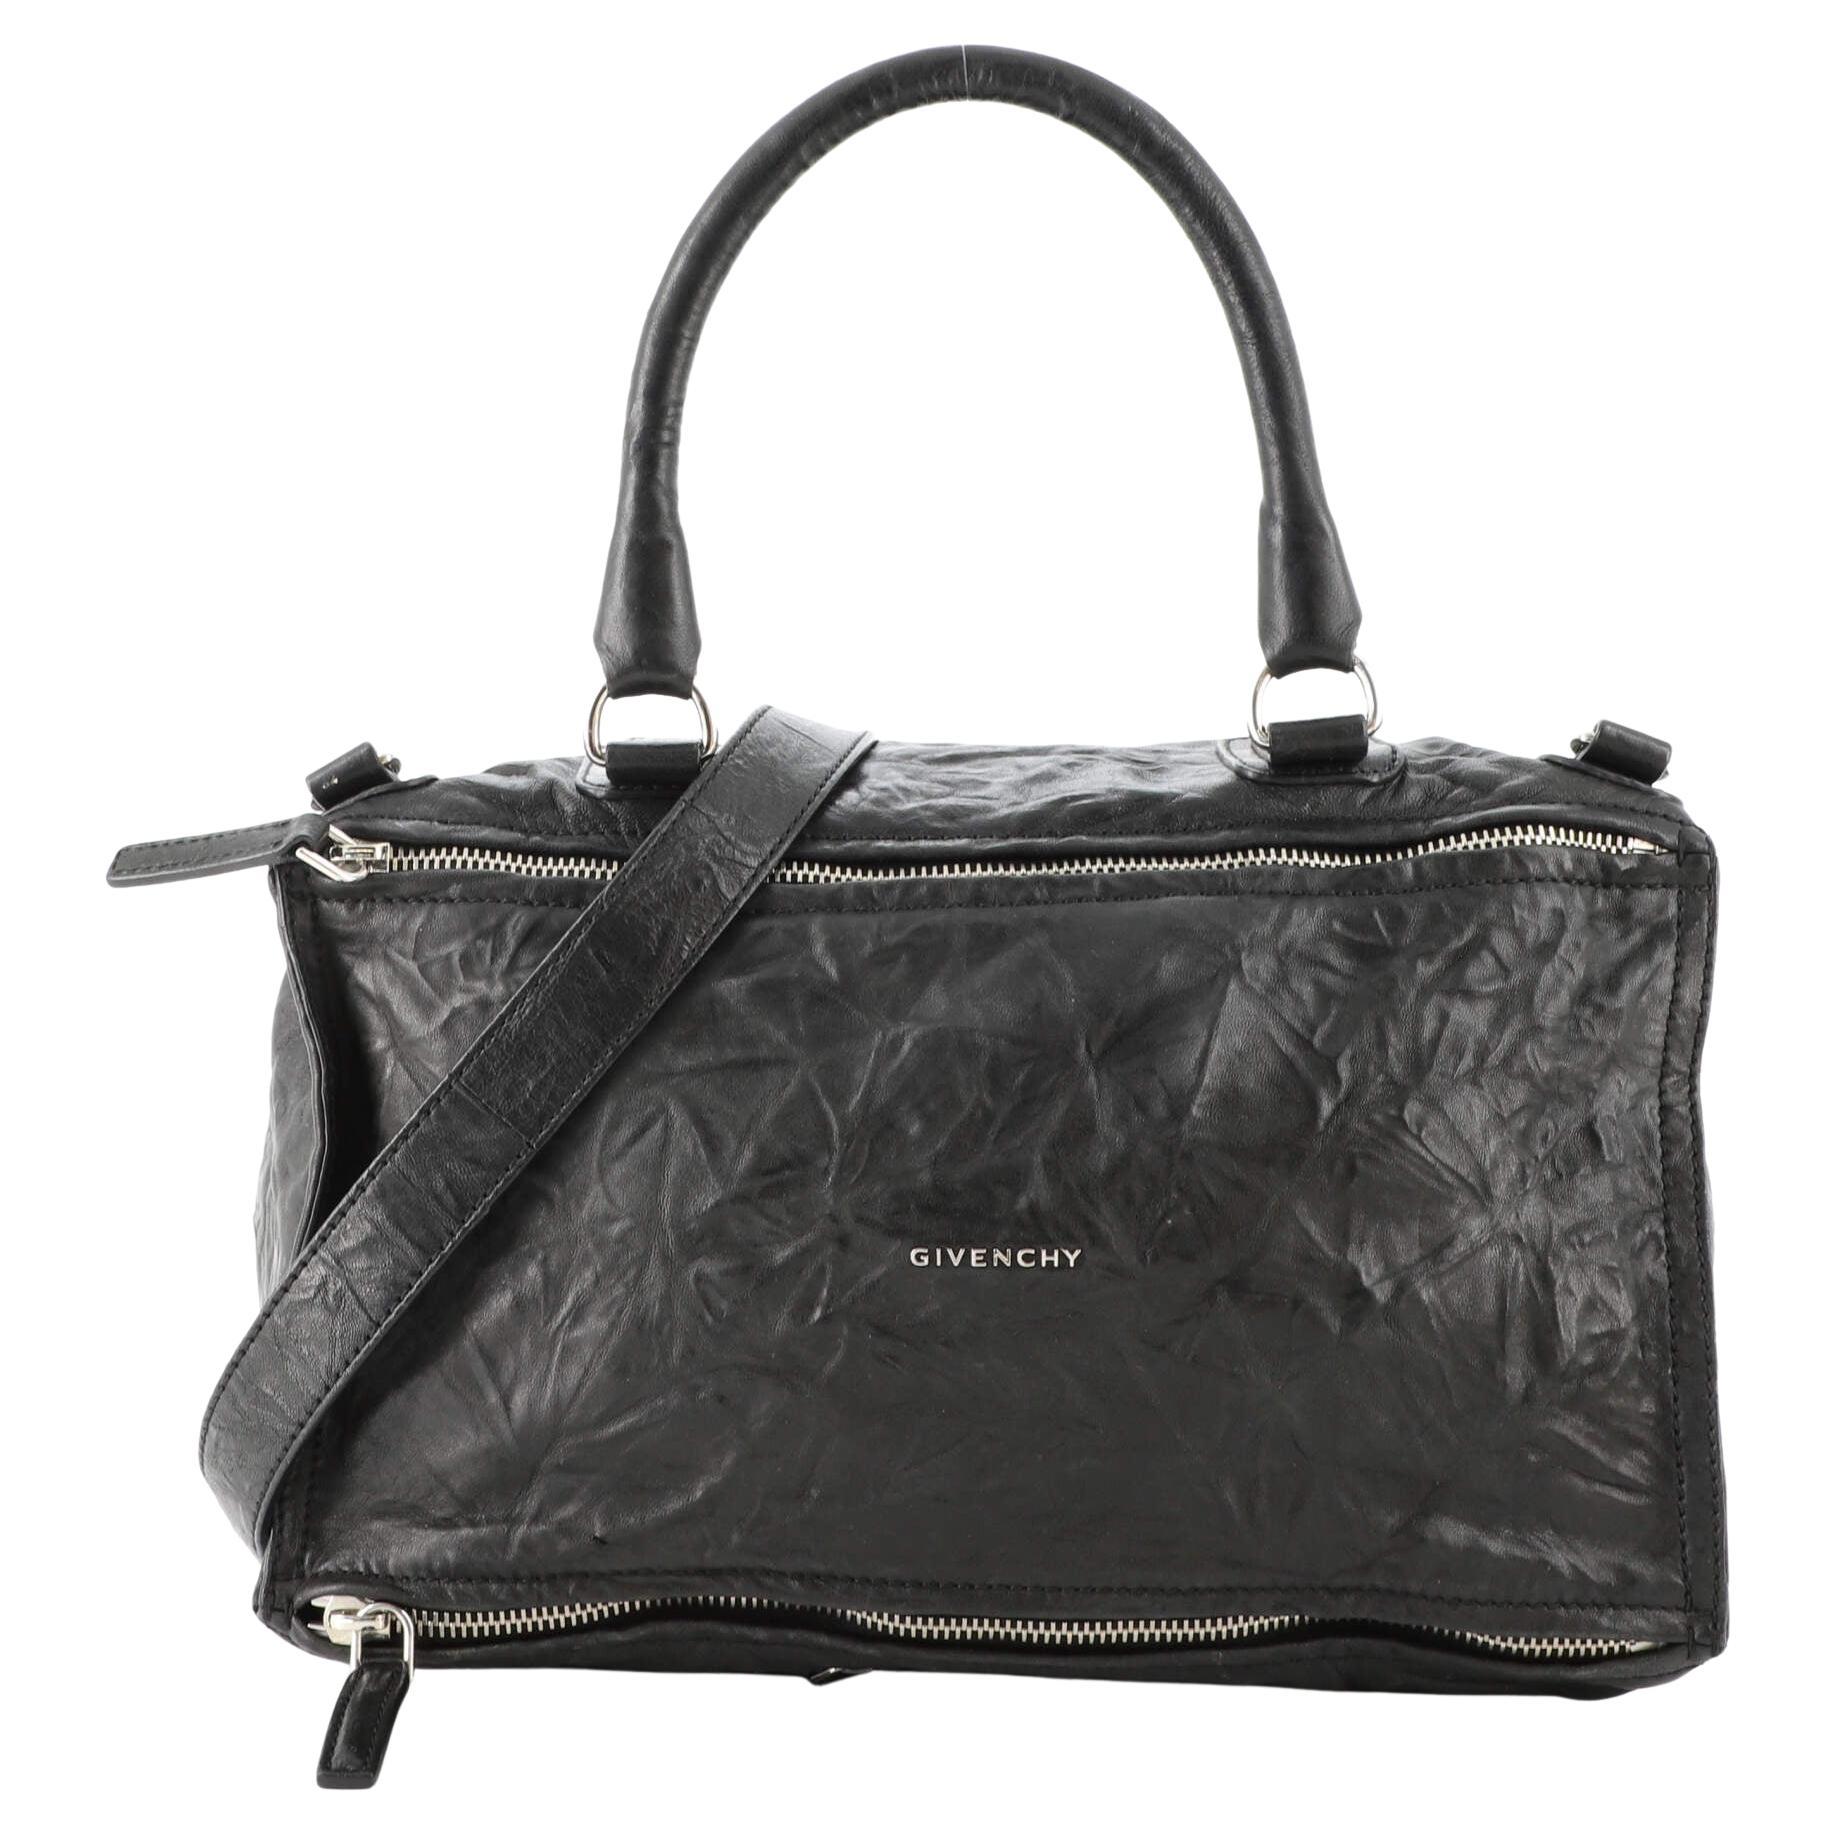 Givenchy Pandora Bag Leather Large